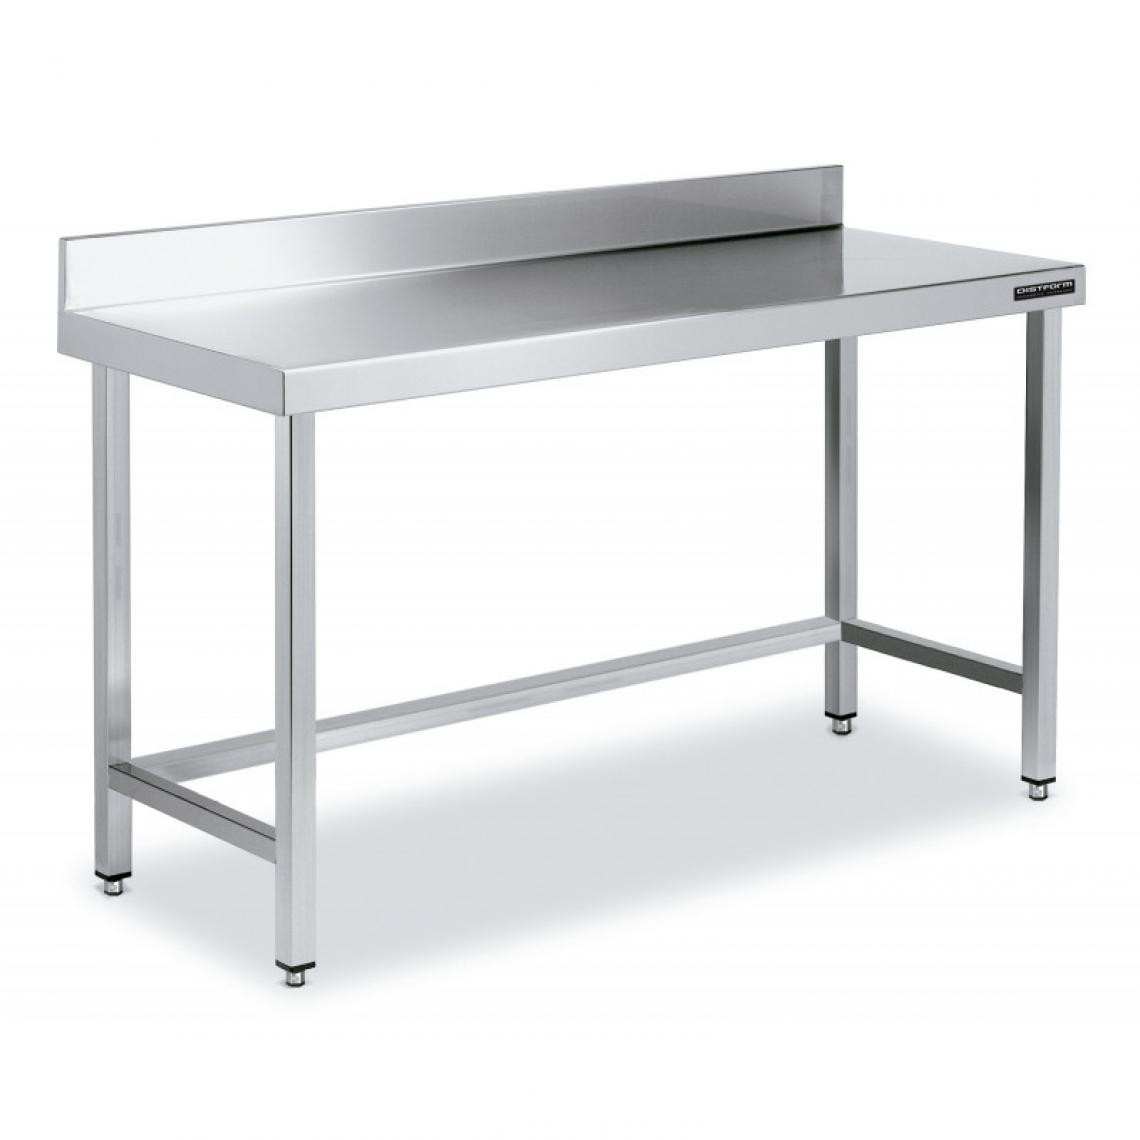 DISTFORM - Table de Travail Adossée Inox avec Renforts - Gamme 600 - Hauteur 600 - Distform - Acier inoxydable700x600 - Tables à manger